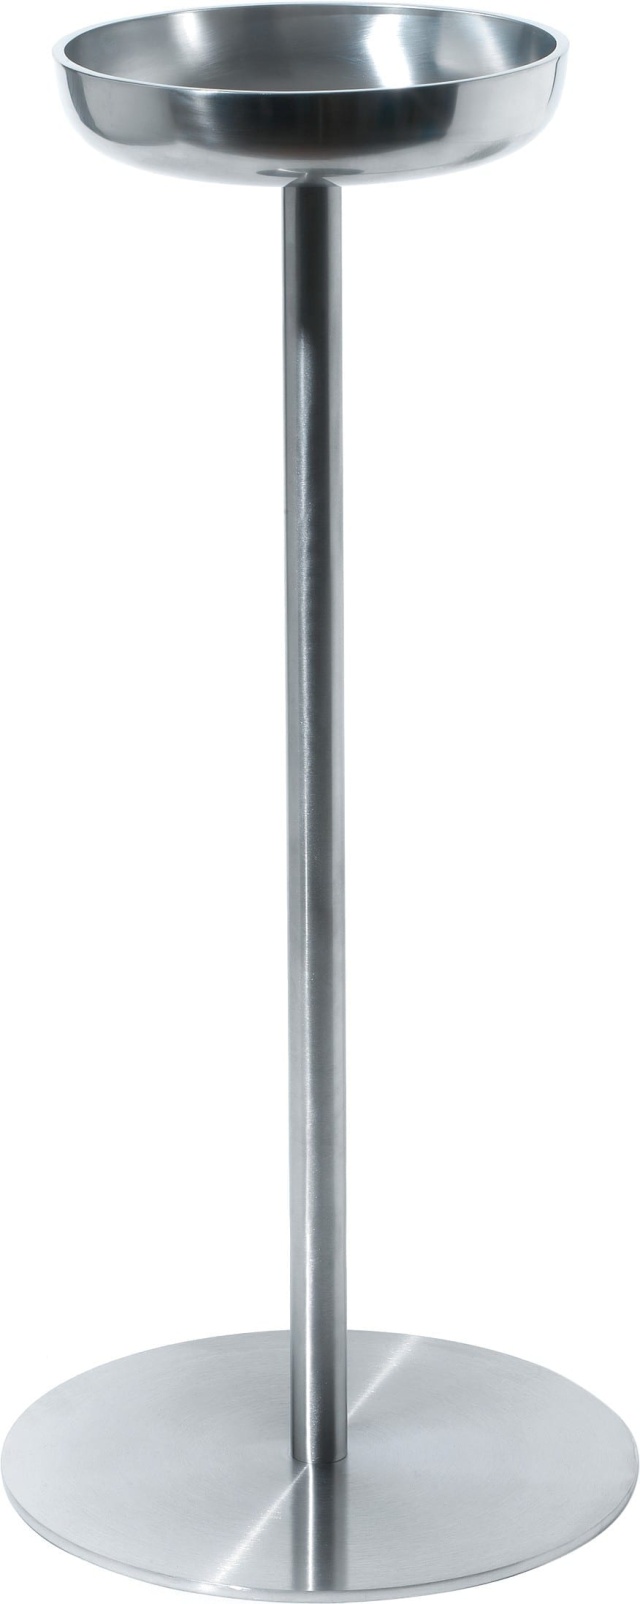 Standaard voor wijnkoeler, Diameter 28 cm - Alessi